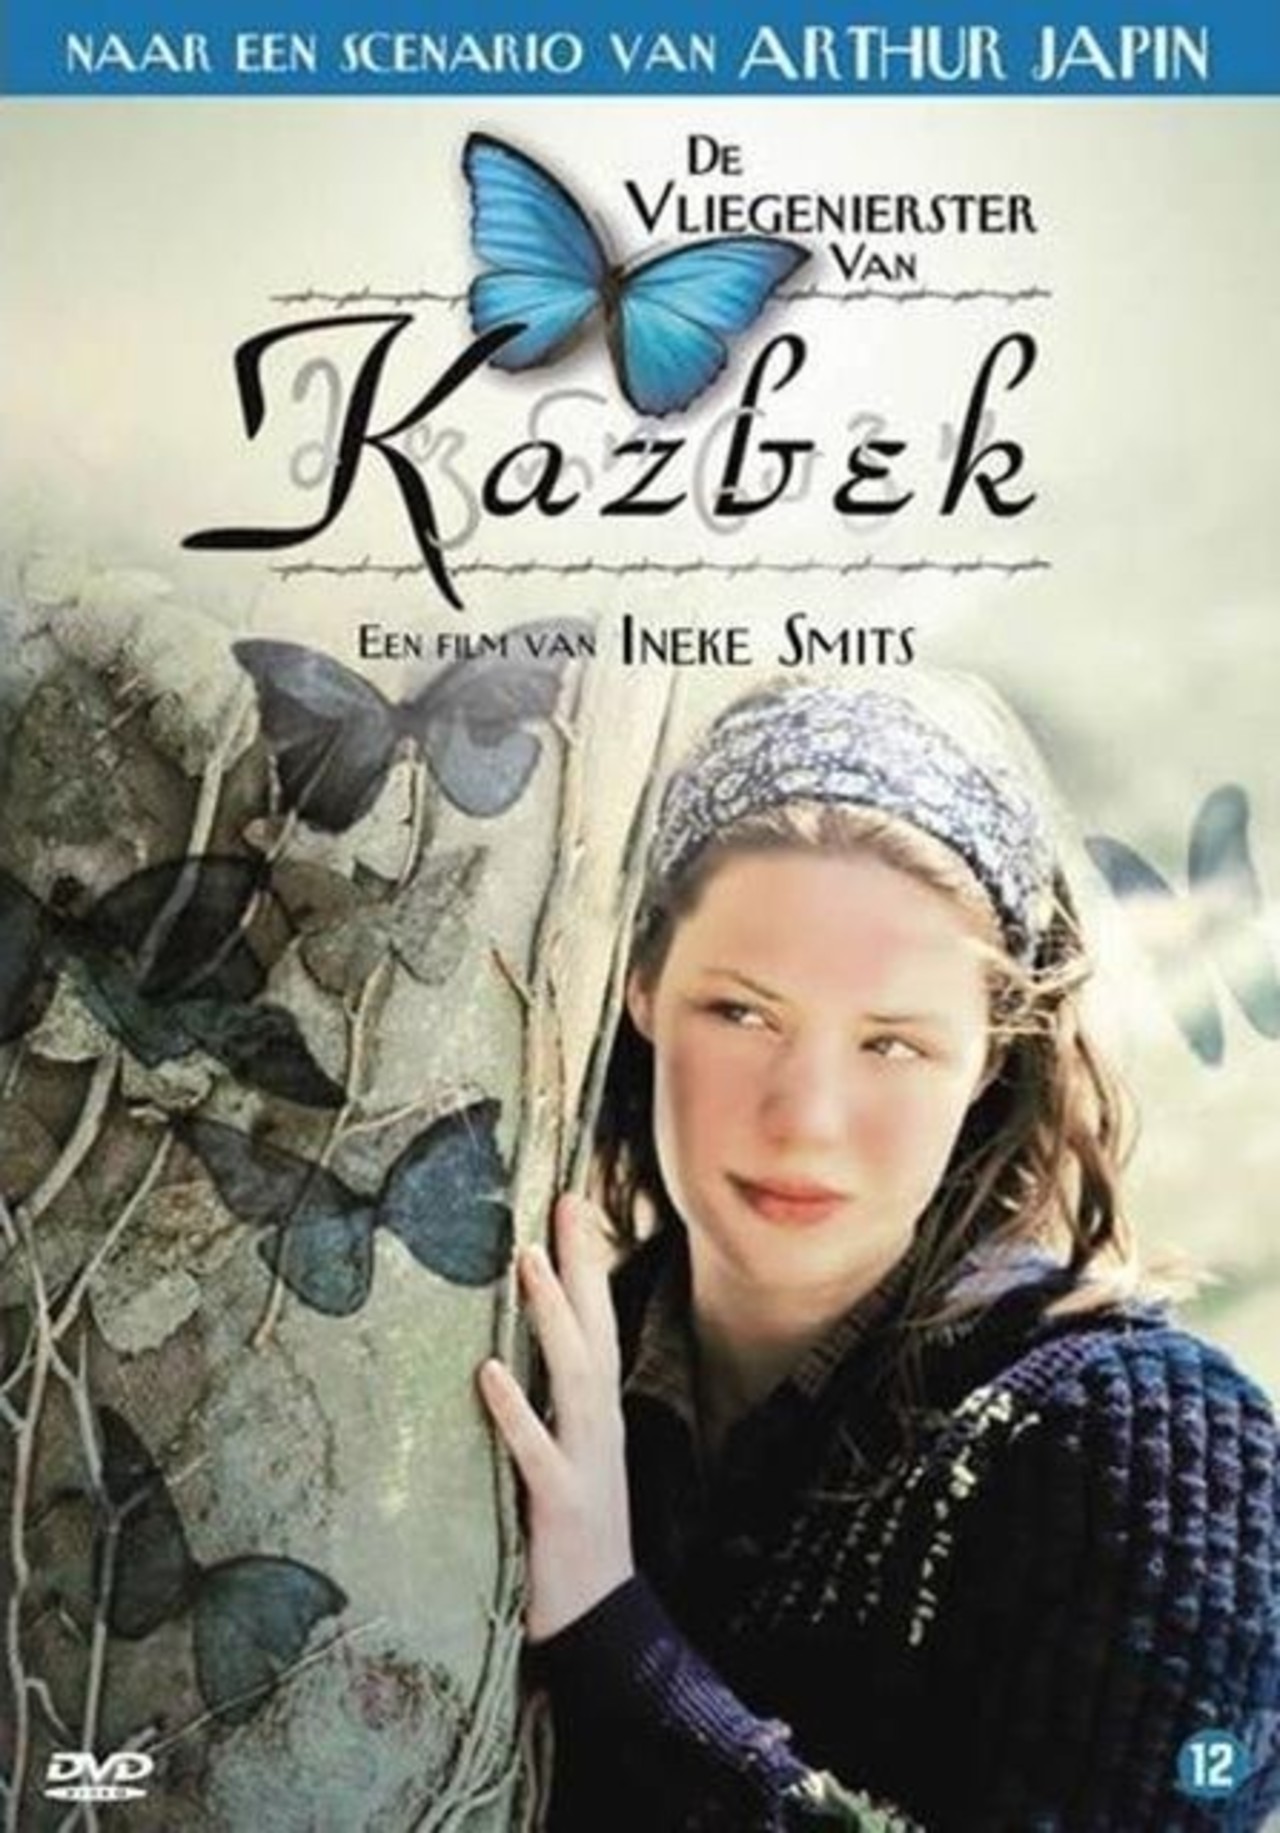 De vliegenierster van Kazbek